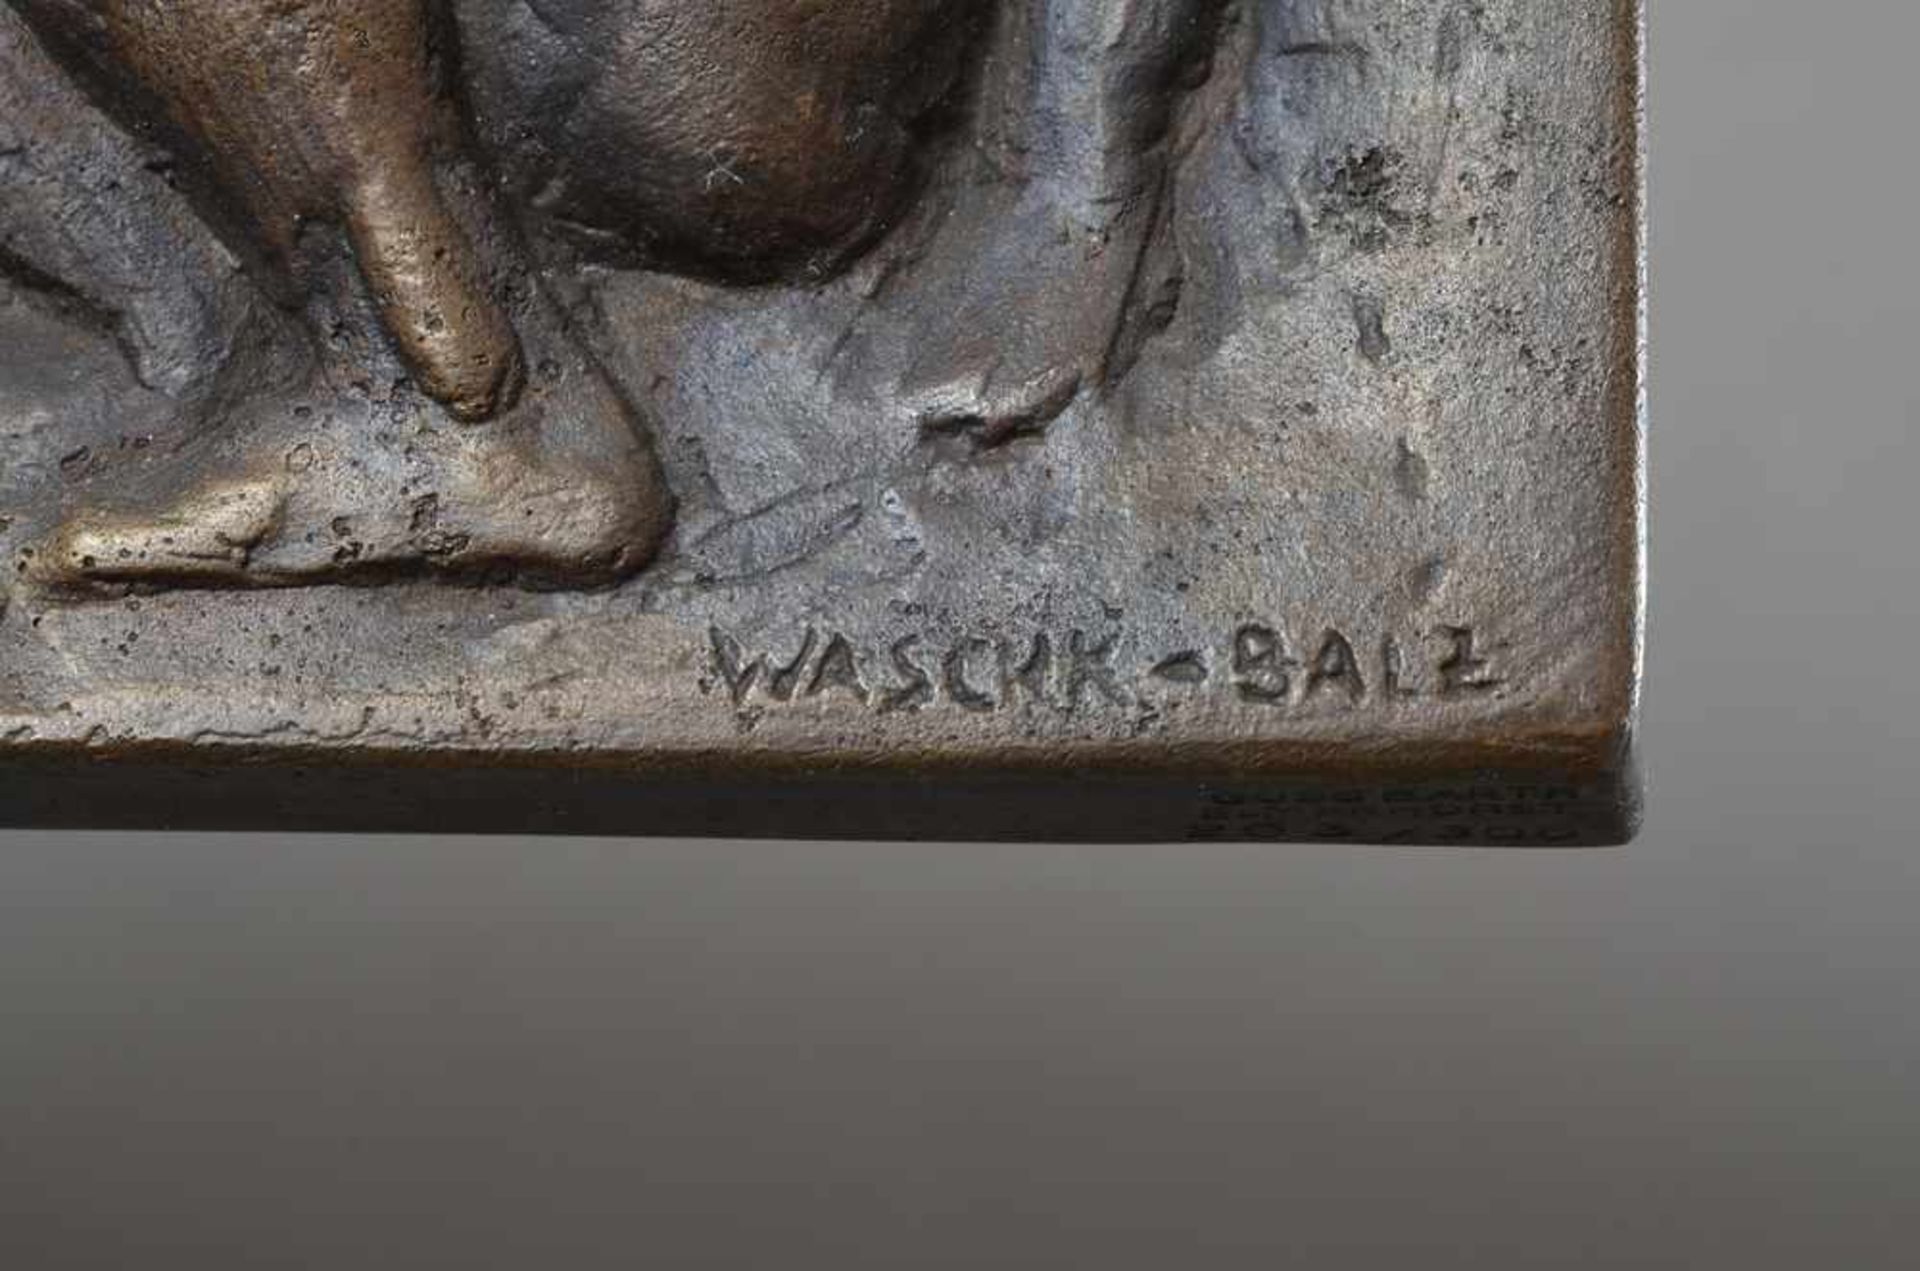 Waschk-Balz, Doris (*1942) "Kinder beim Murmelspiel", 1978, 203/300, Bronzerelief, 20,5x16cm - Bild 4 aus 4